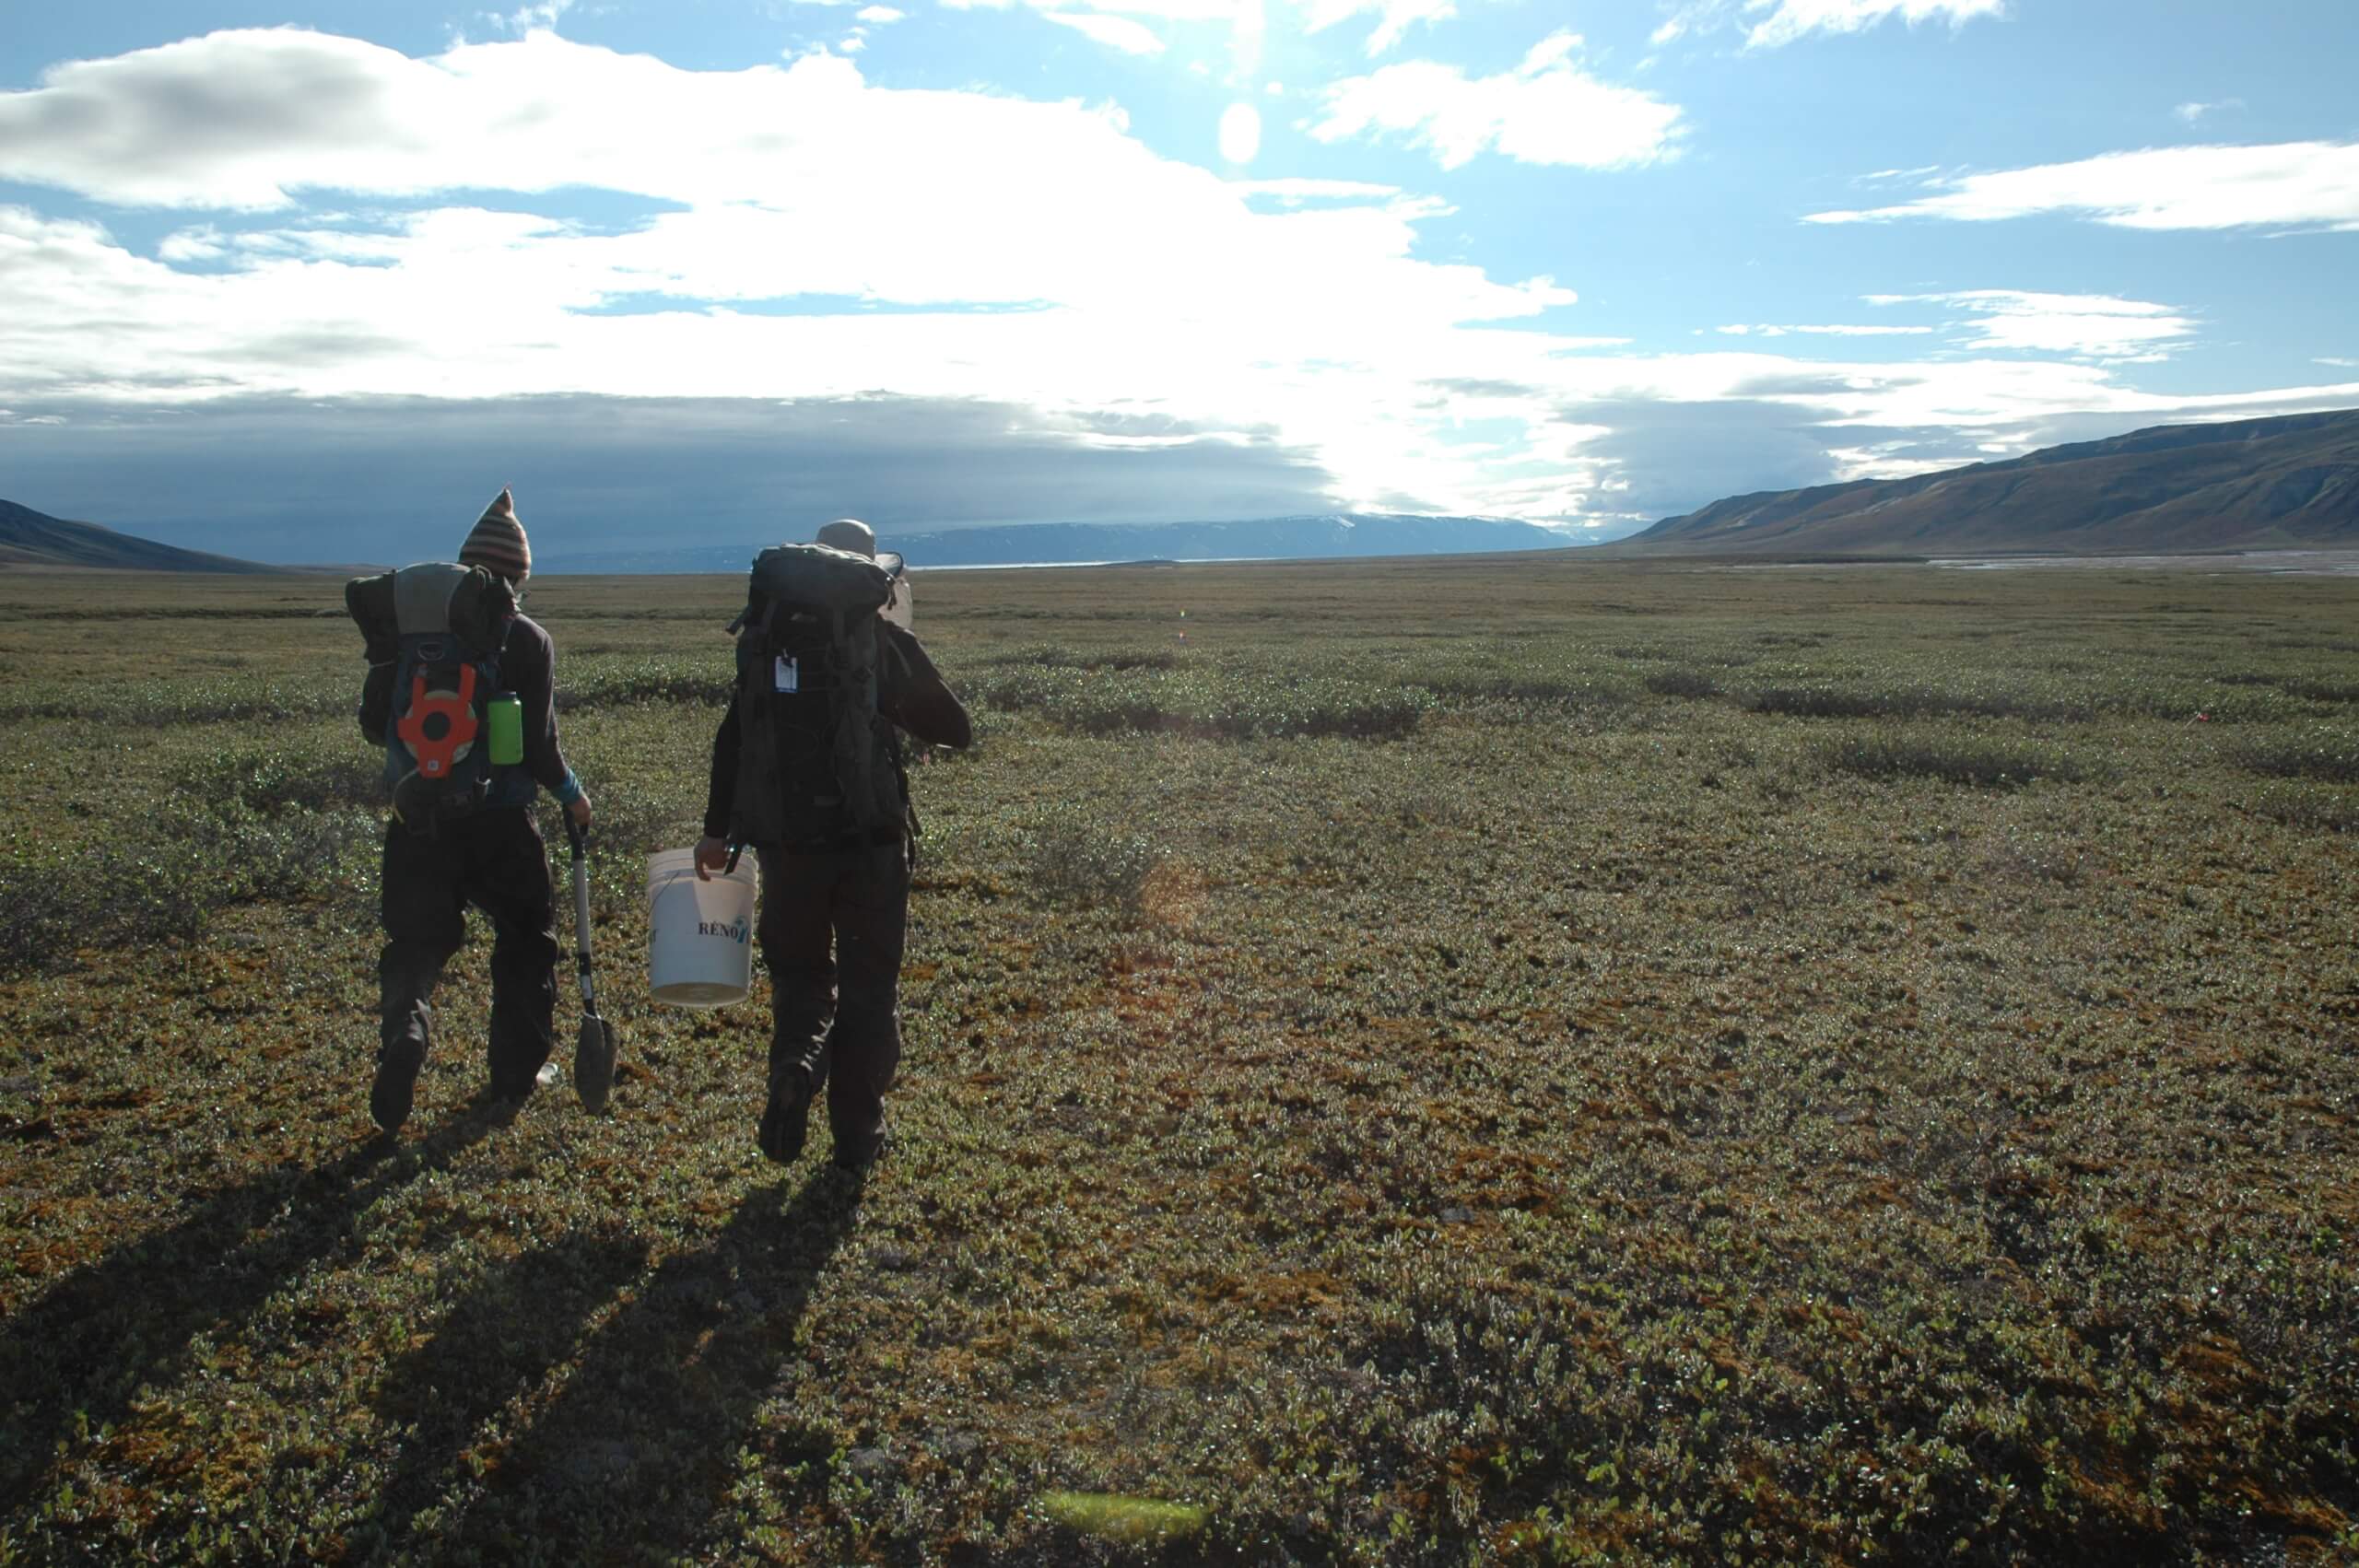 La professeure Esther Lévesque (sciences de l’environnement, UQTR) est photographiée ici dans le parc national Sirmilik (Haut-Arctique), sur les bords de la rivière glaciaire de la vallée Qarlikturvik (île Bylot, Nunavut).